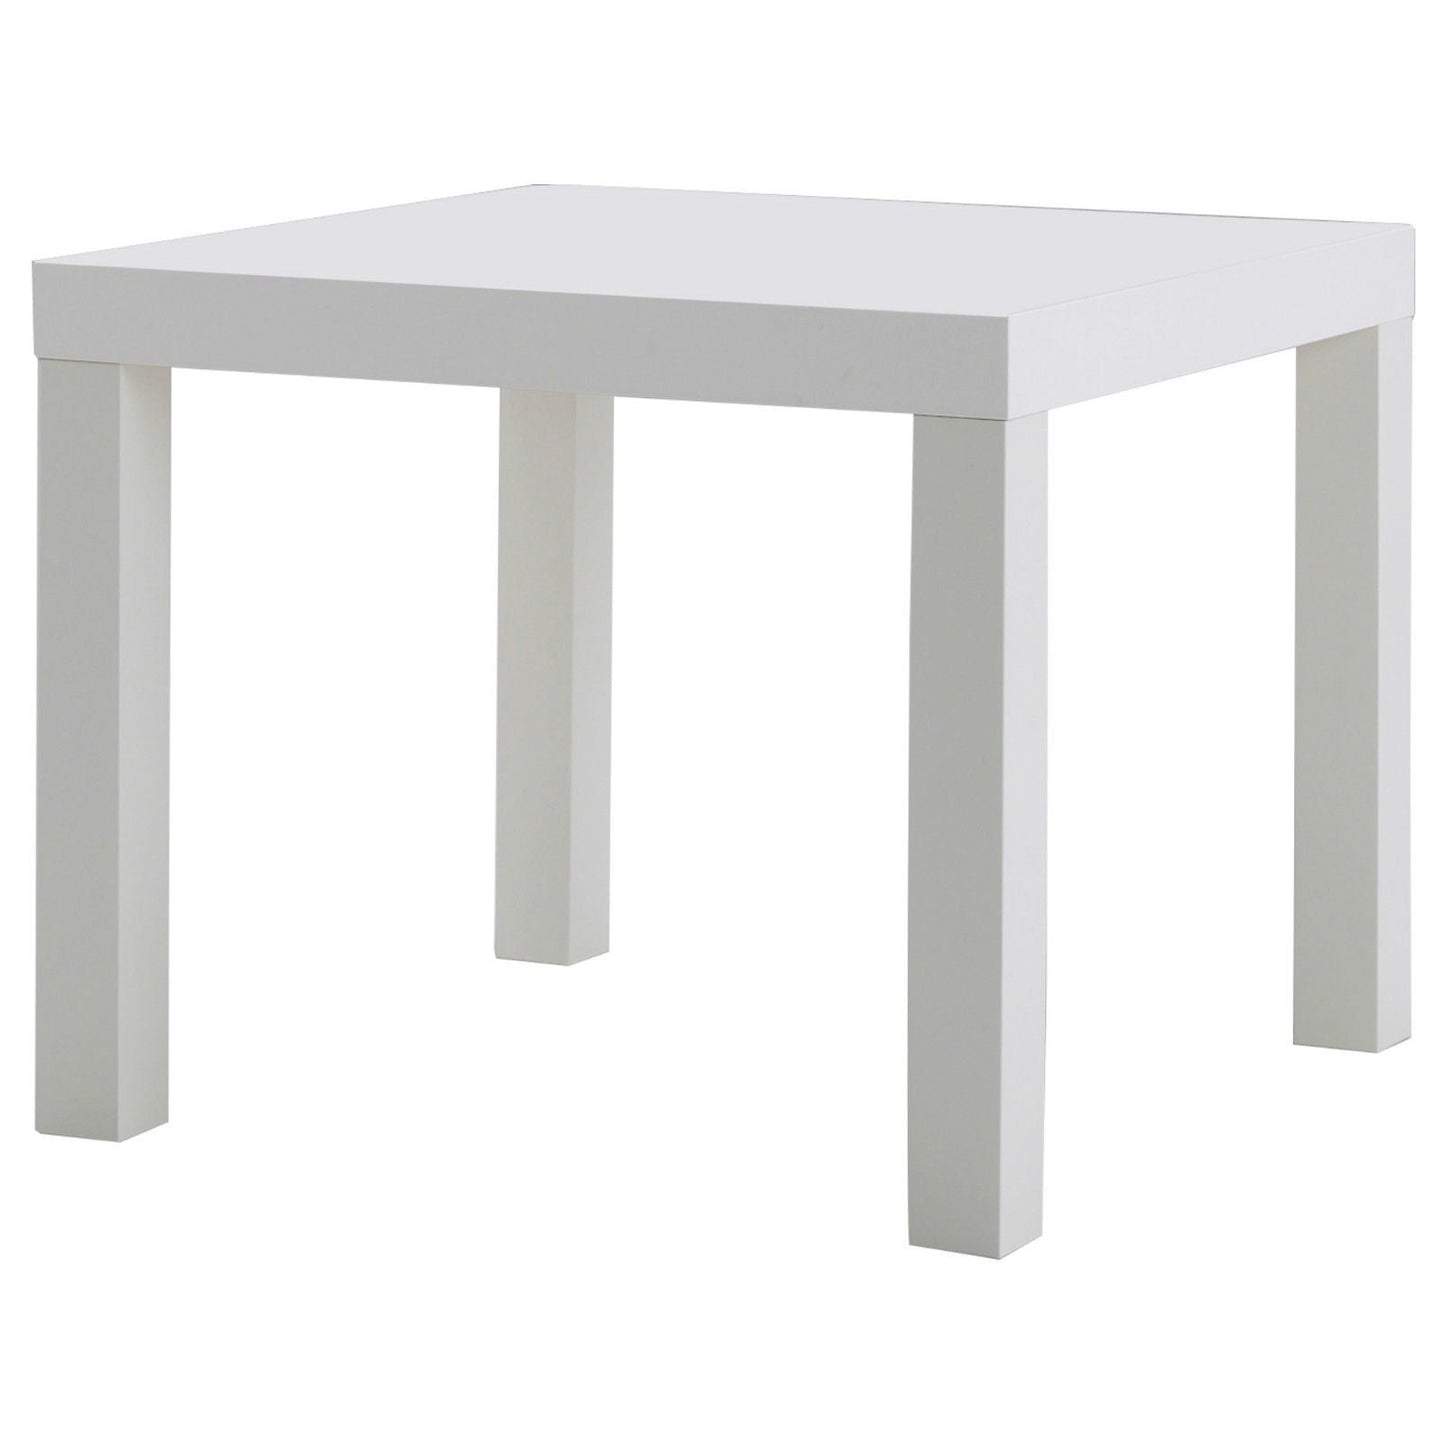 Abaseen White Side Table For Room Corner